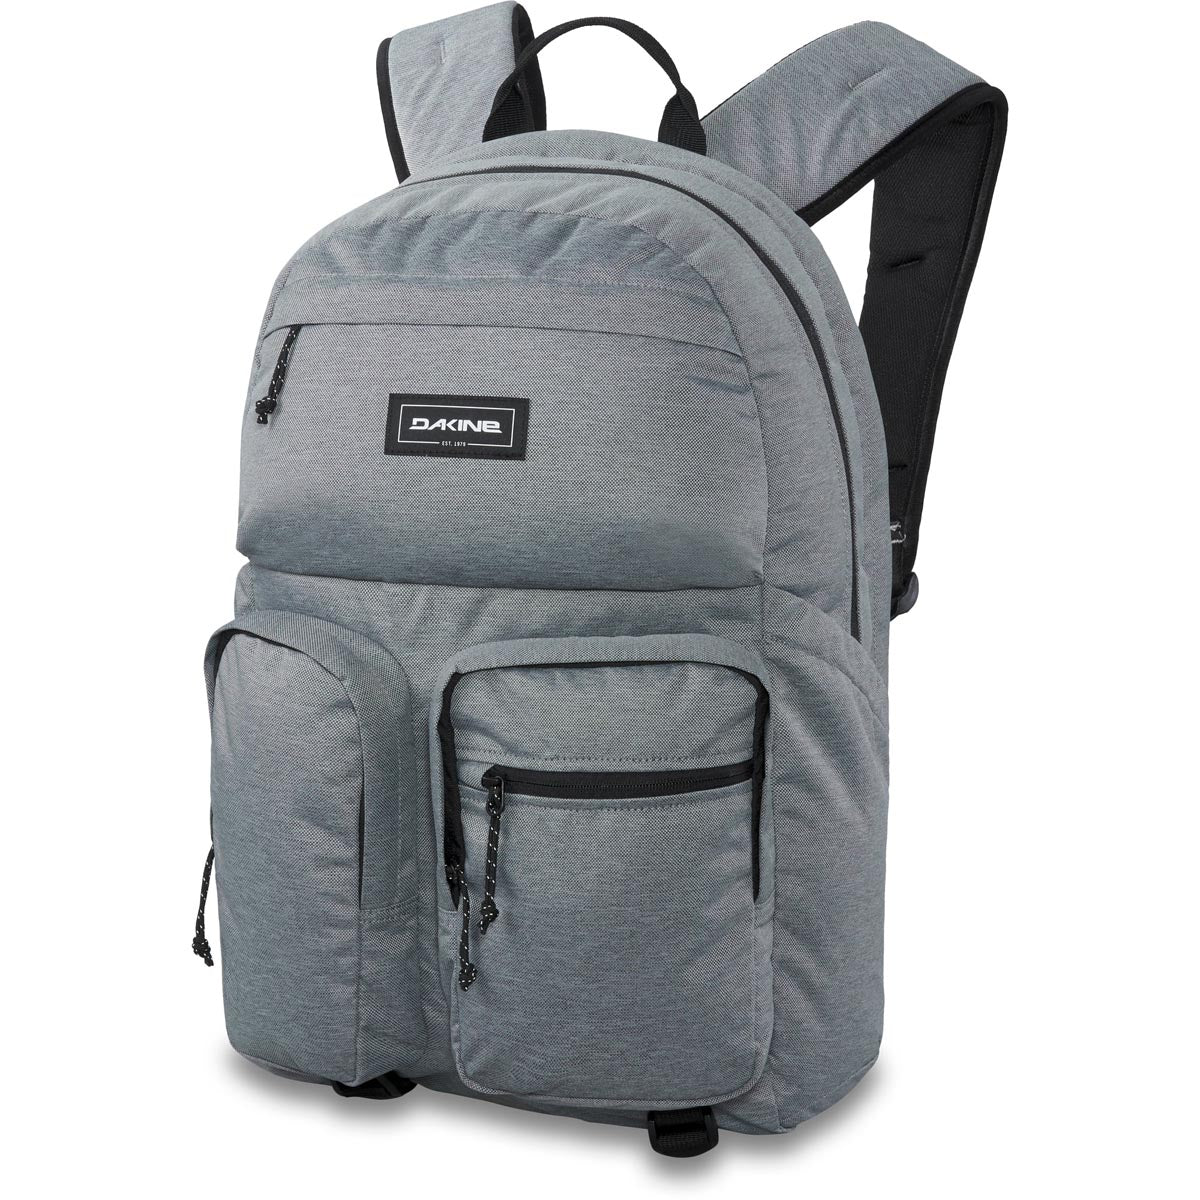 Dakine Method Dlx 28l Backpack - Geyser Grey image 1